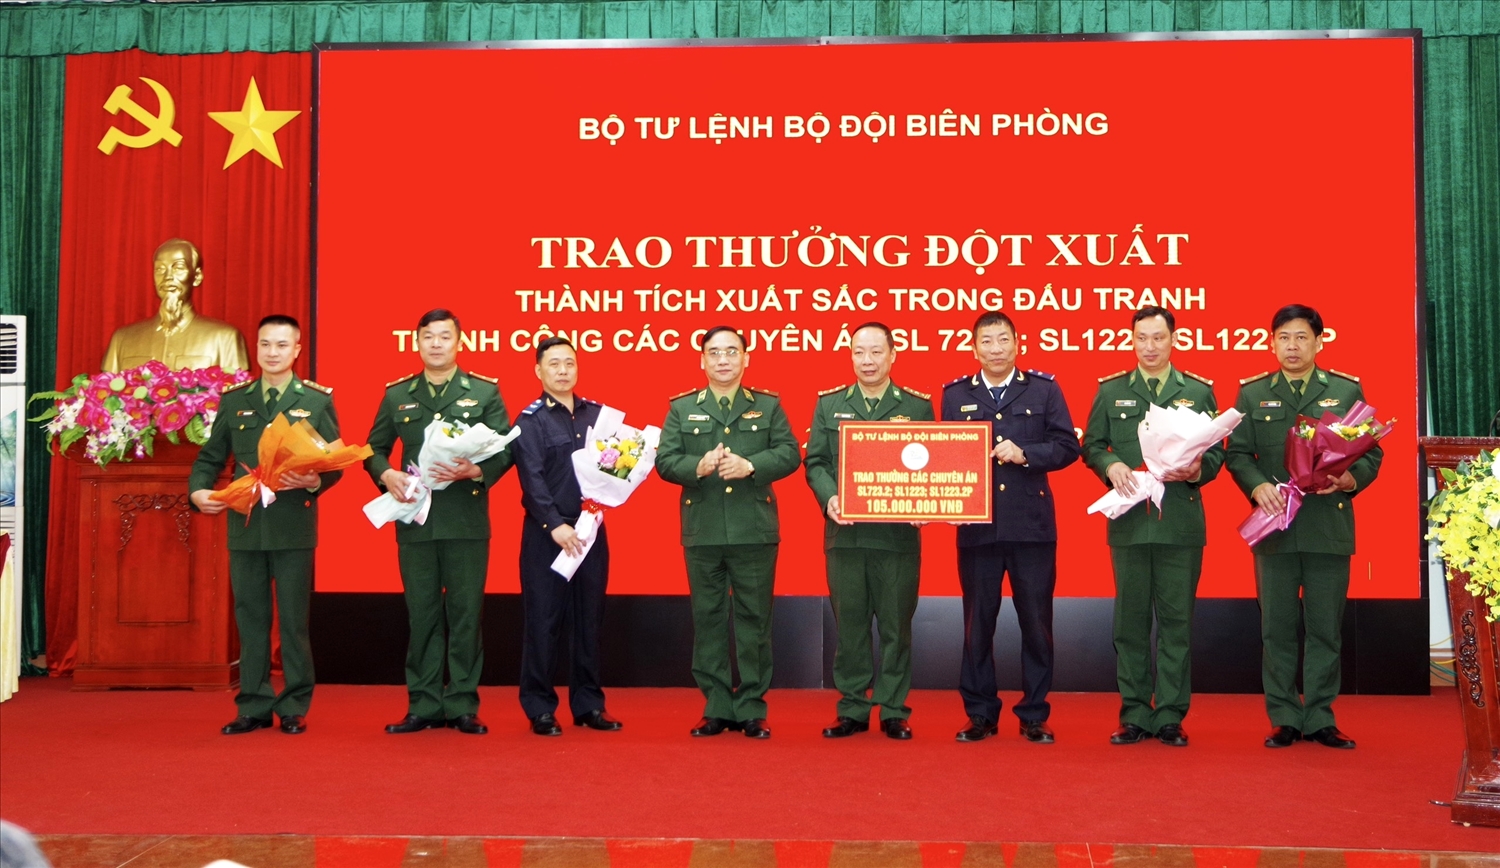 Thiếu tướng Đỗ Ngọc Cảnh trao thưởng đột xuất cho các tập thể và cá nhân có thành tích xuất sắc trong đấu tranh với tội phạm ma túy. (Ảnh: Vì Hiện)